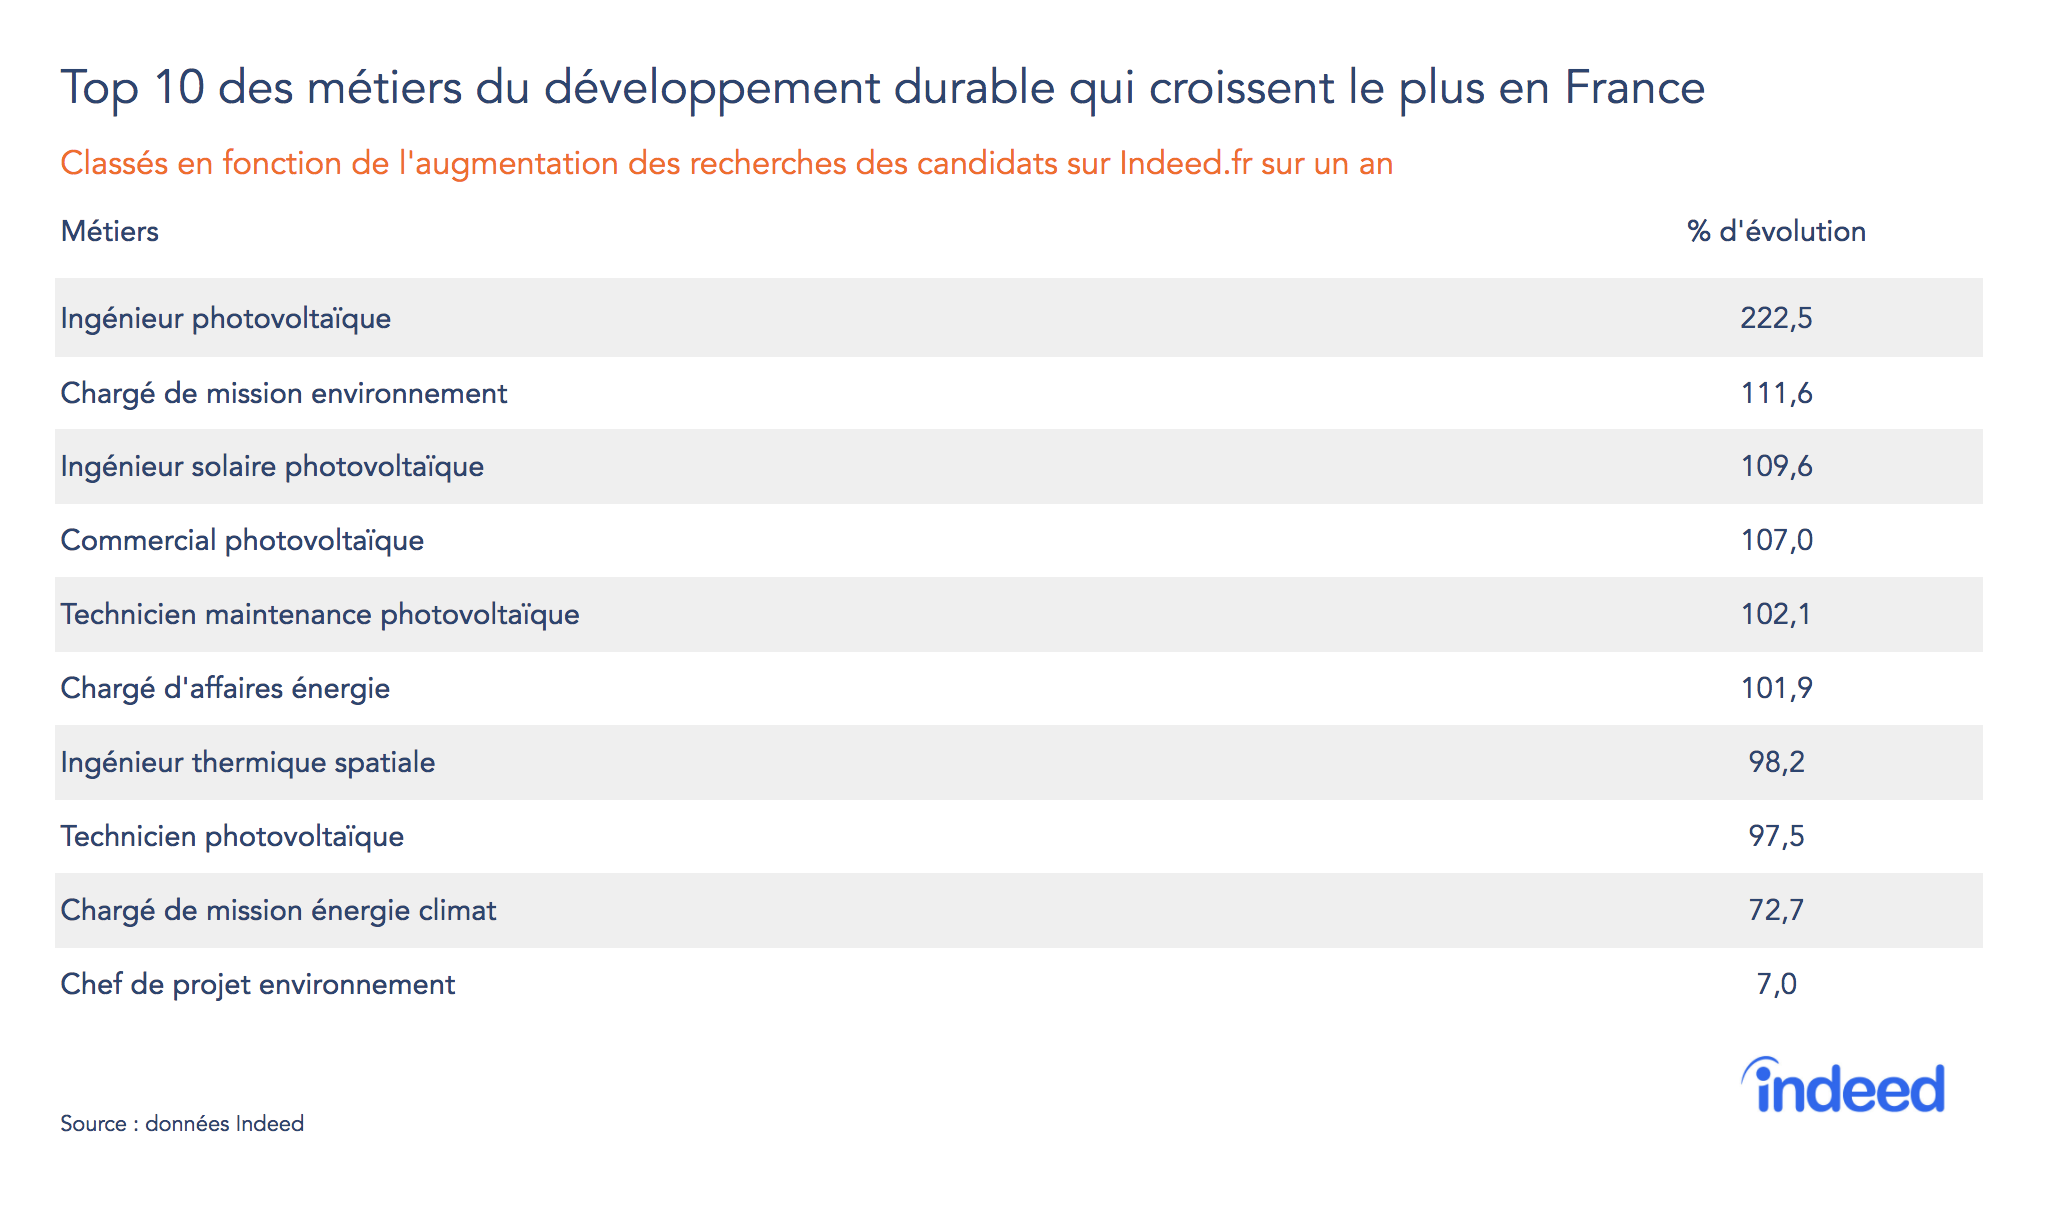 Top 10 des métiers du développement durable qui croissent le plus en France